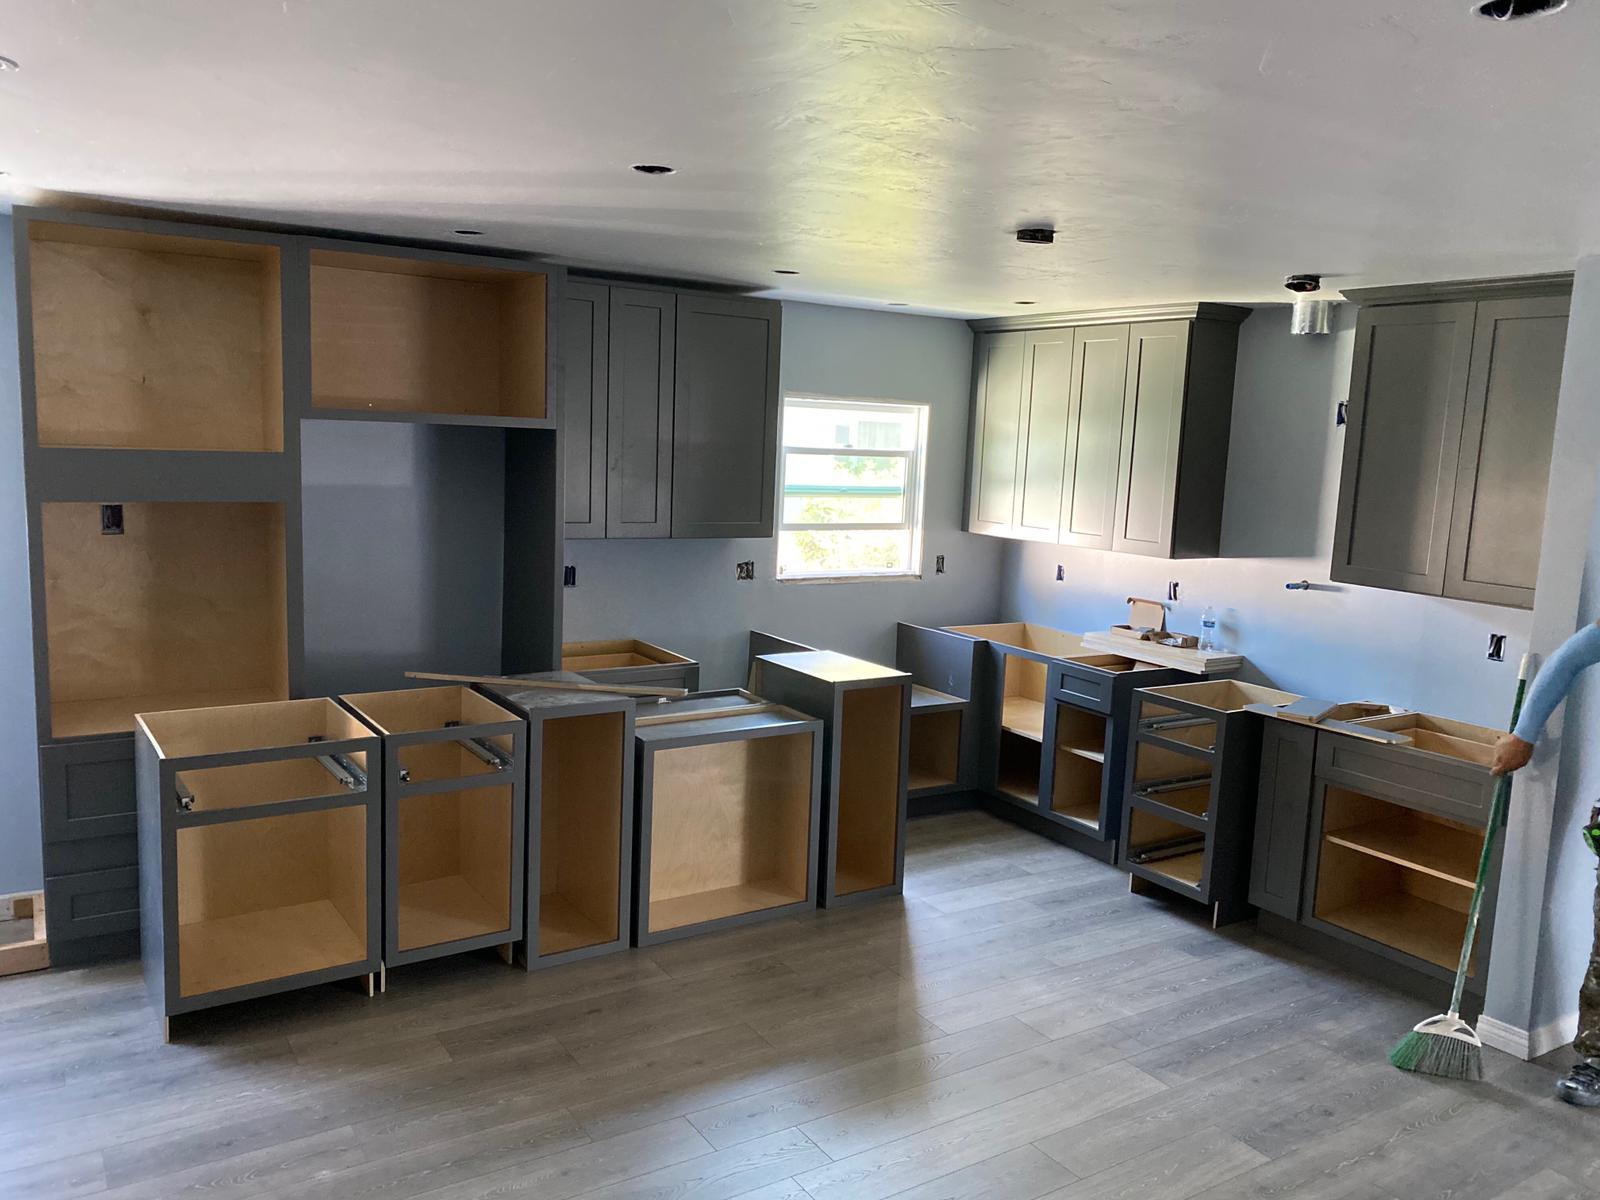 julius Remodling group  kitchen restoration, kitchen upgrades insulation,  Lynnwood Wa, Bellevue wa